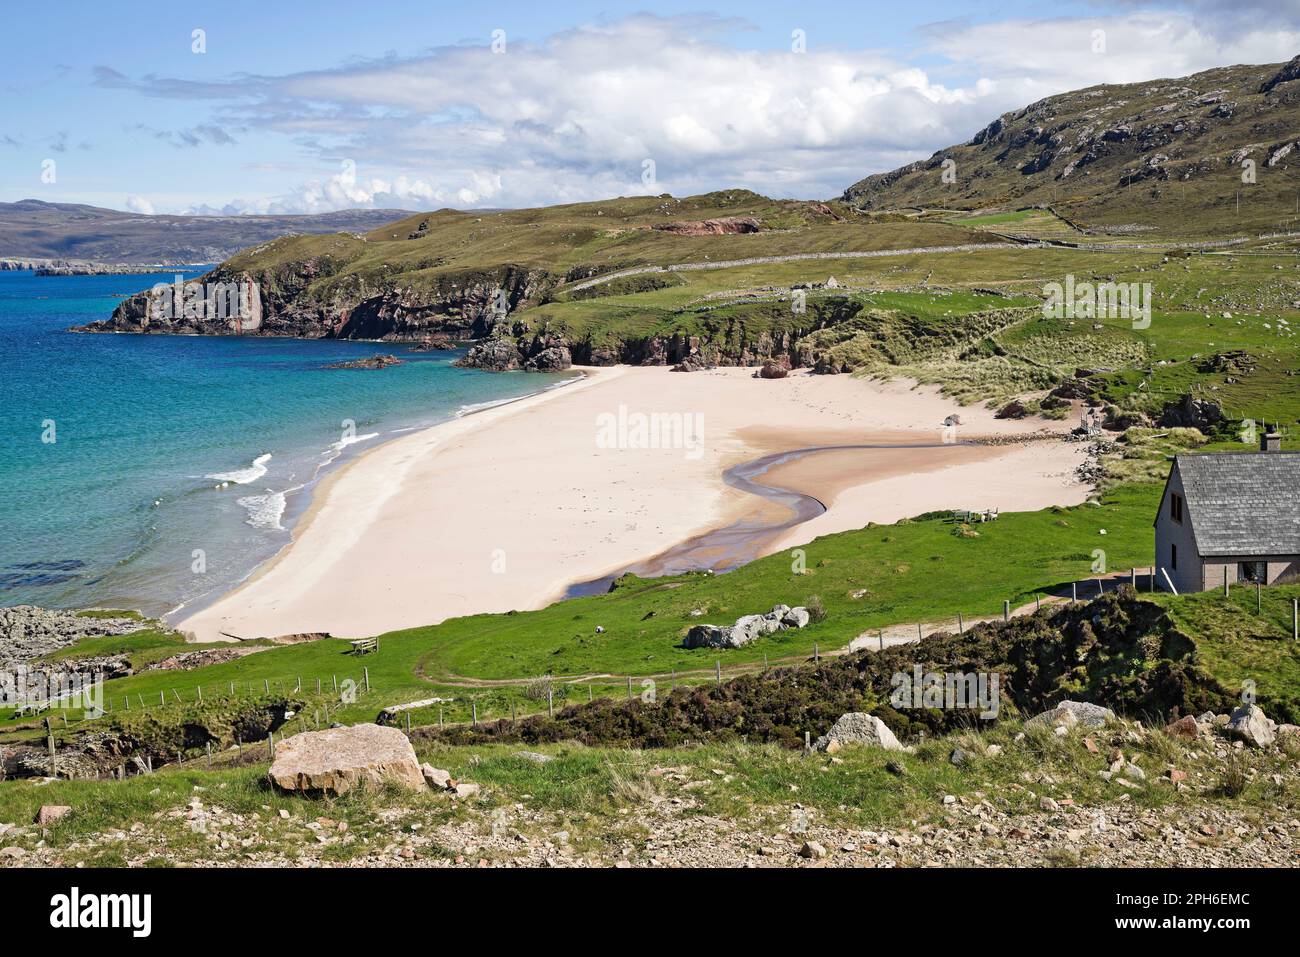 La spiaggia di sabbia bianca riparata a Sangobeg, Durness, North Coast Sutherland in una bella e tranquilla giornata di primavera, Highlands scozzesi, Scozia, Regno Unito Foto Stock